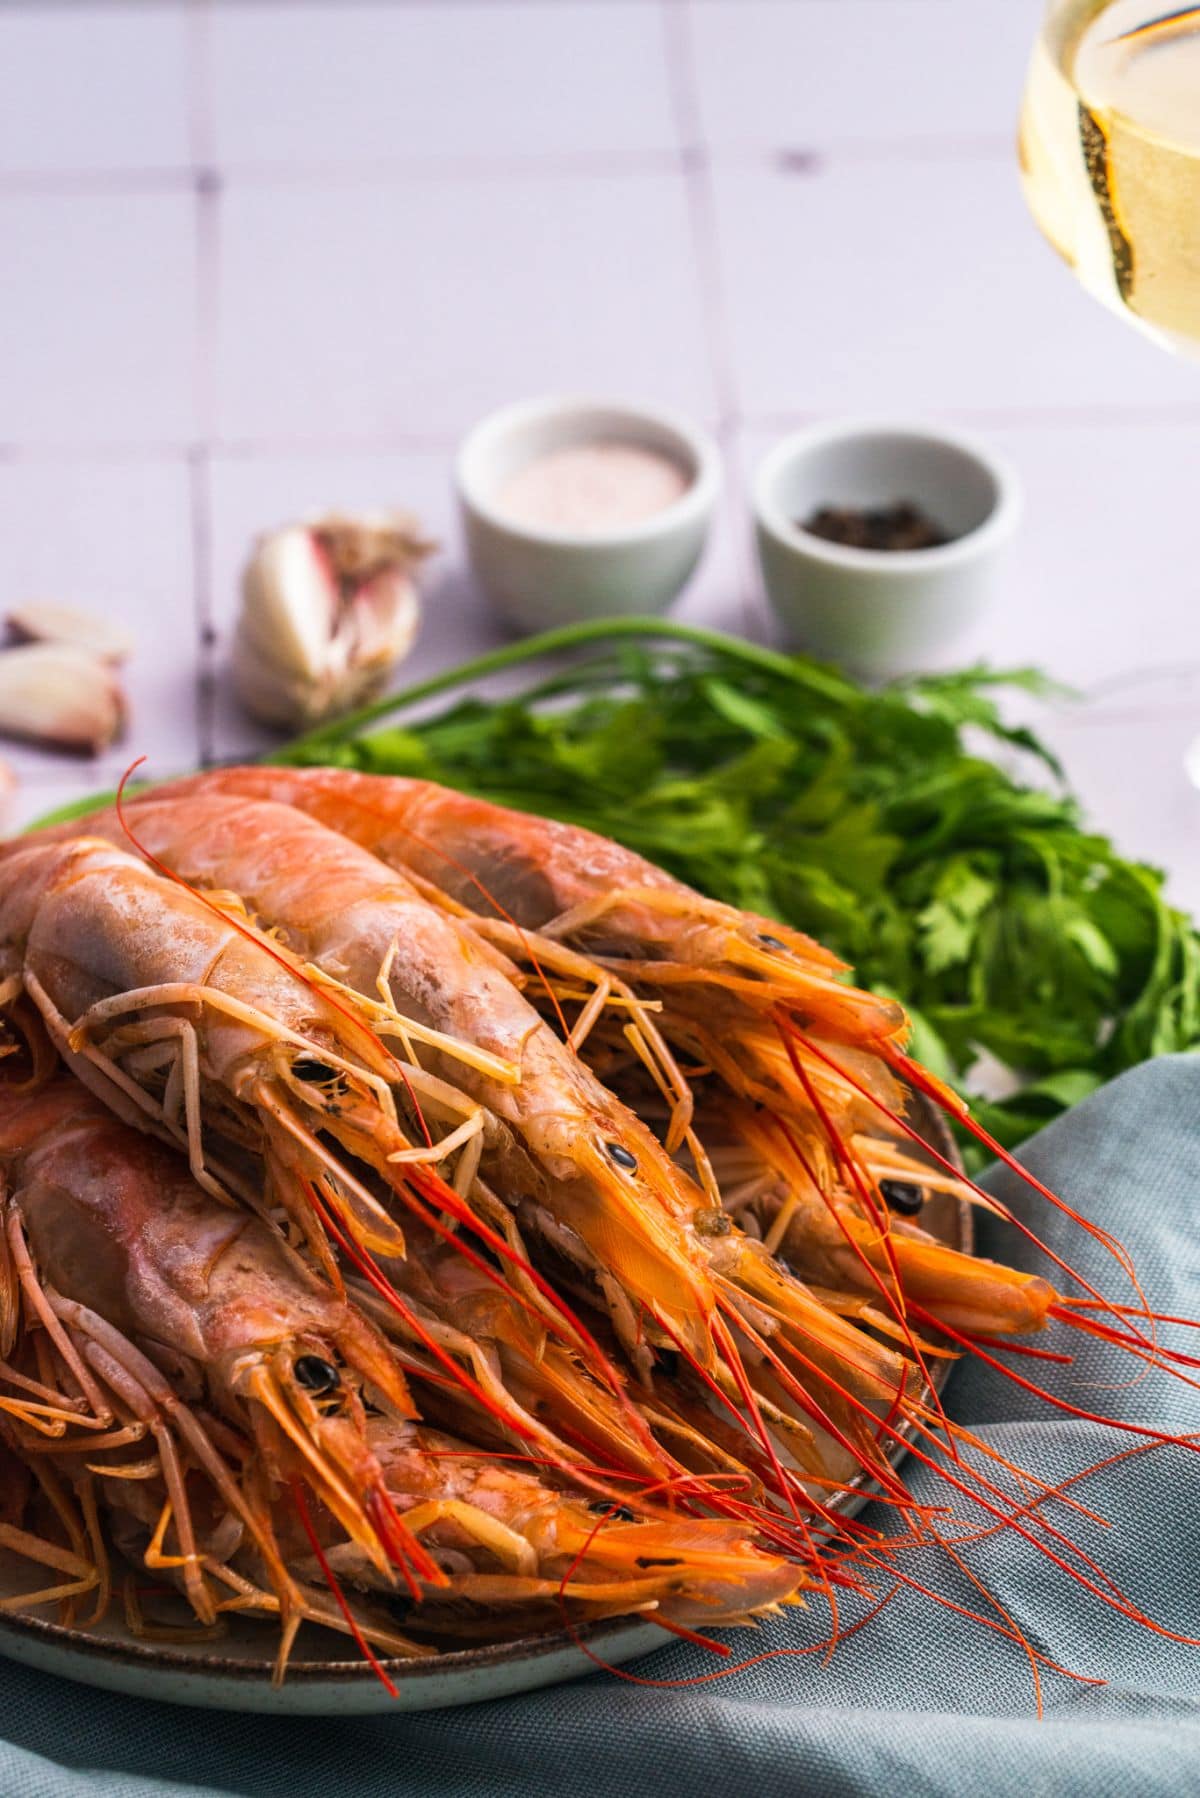 How to cook shrimp step 2